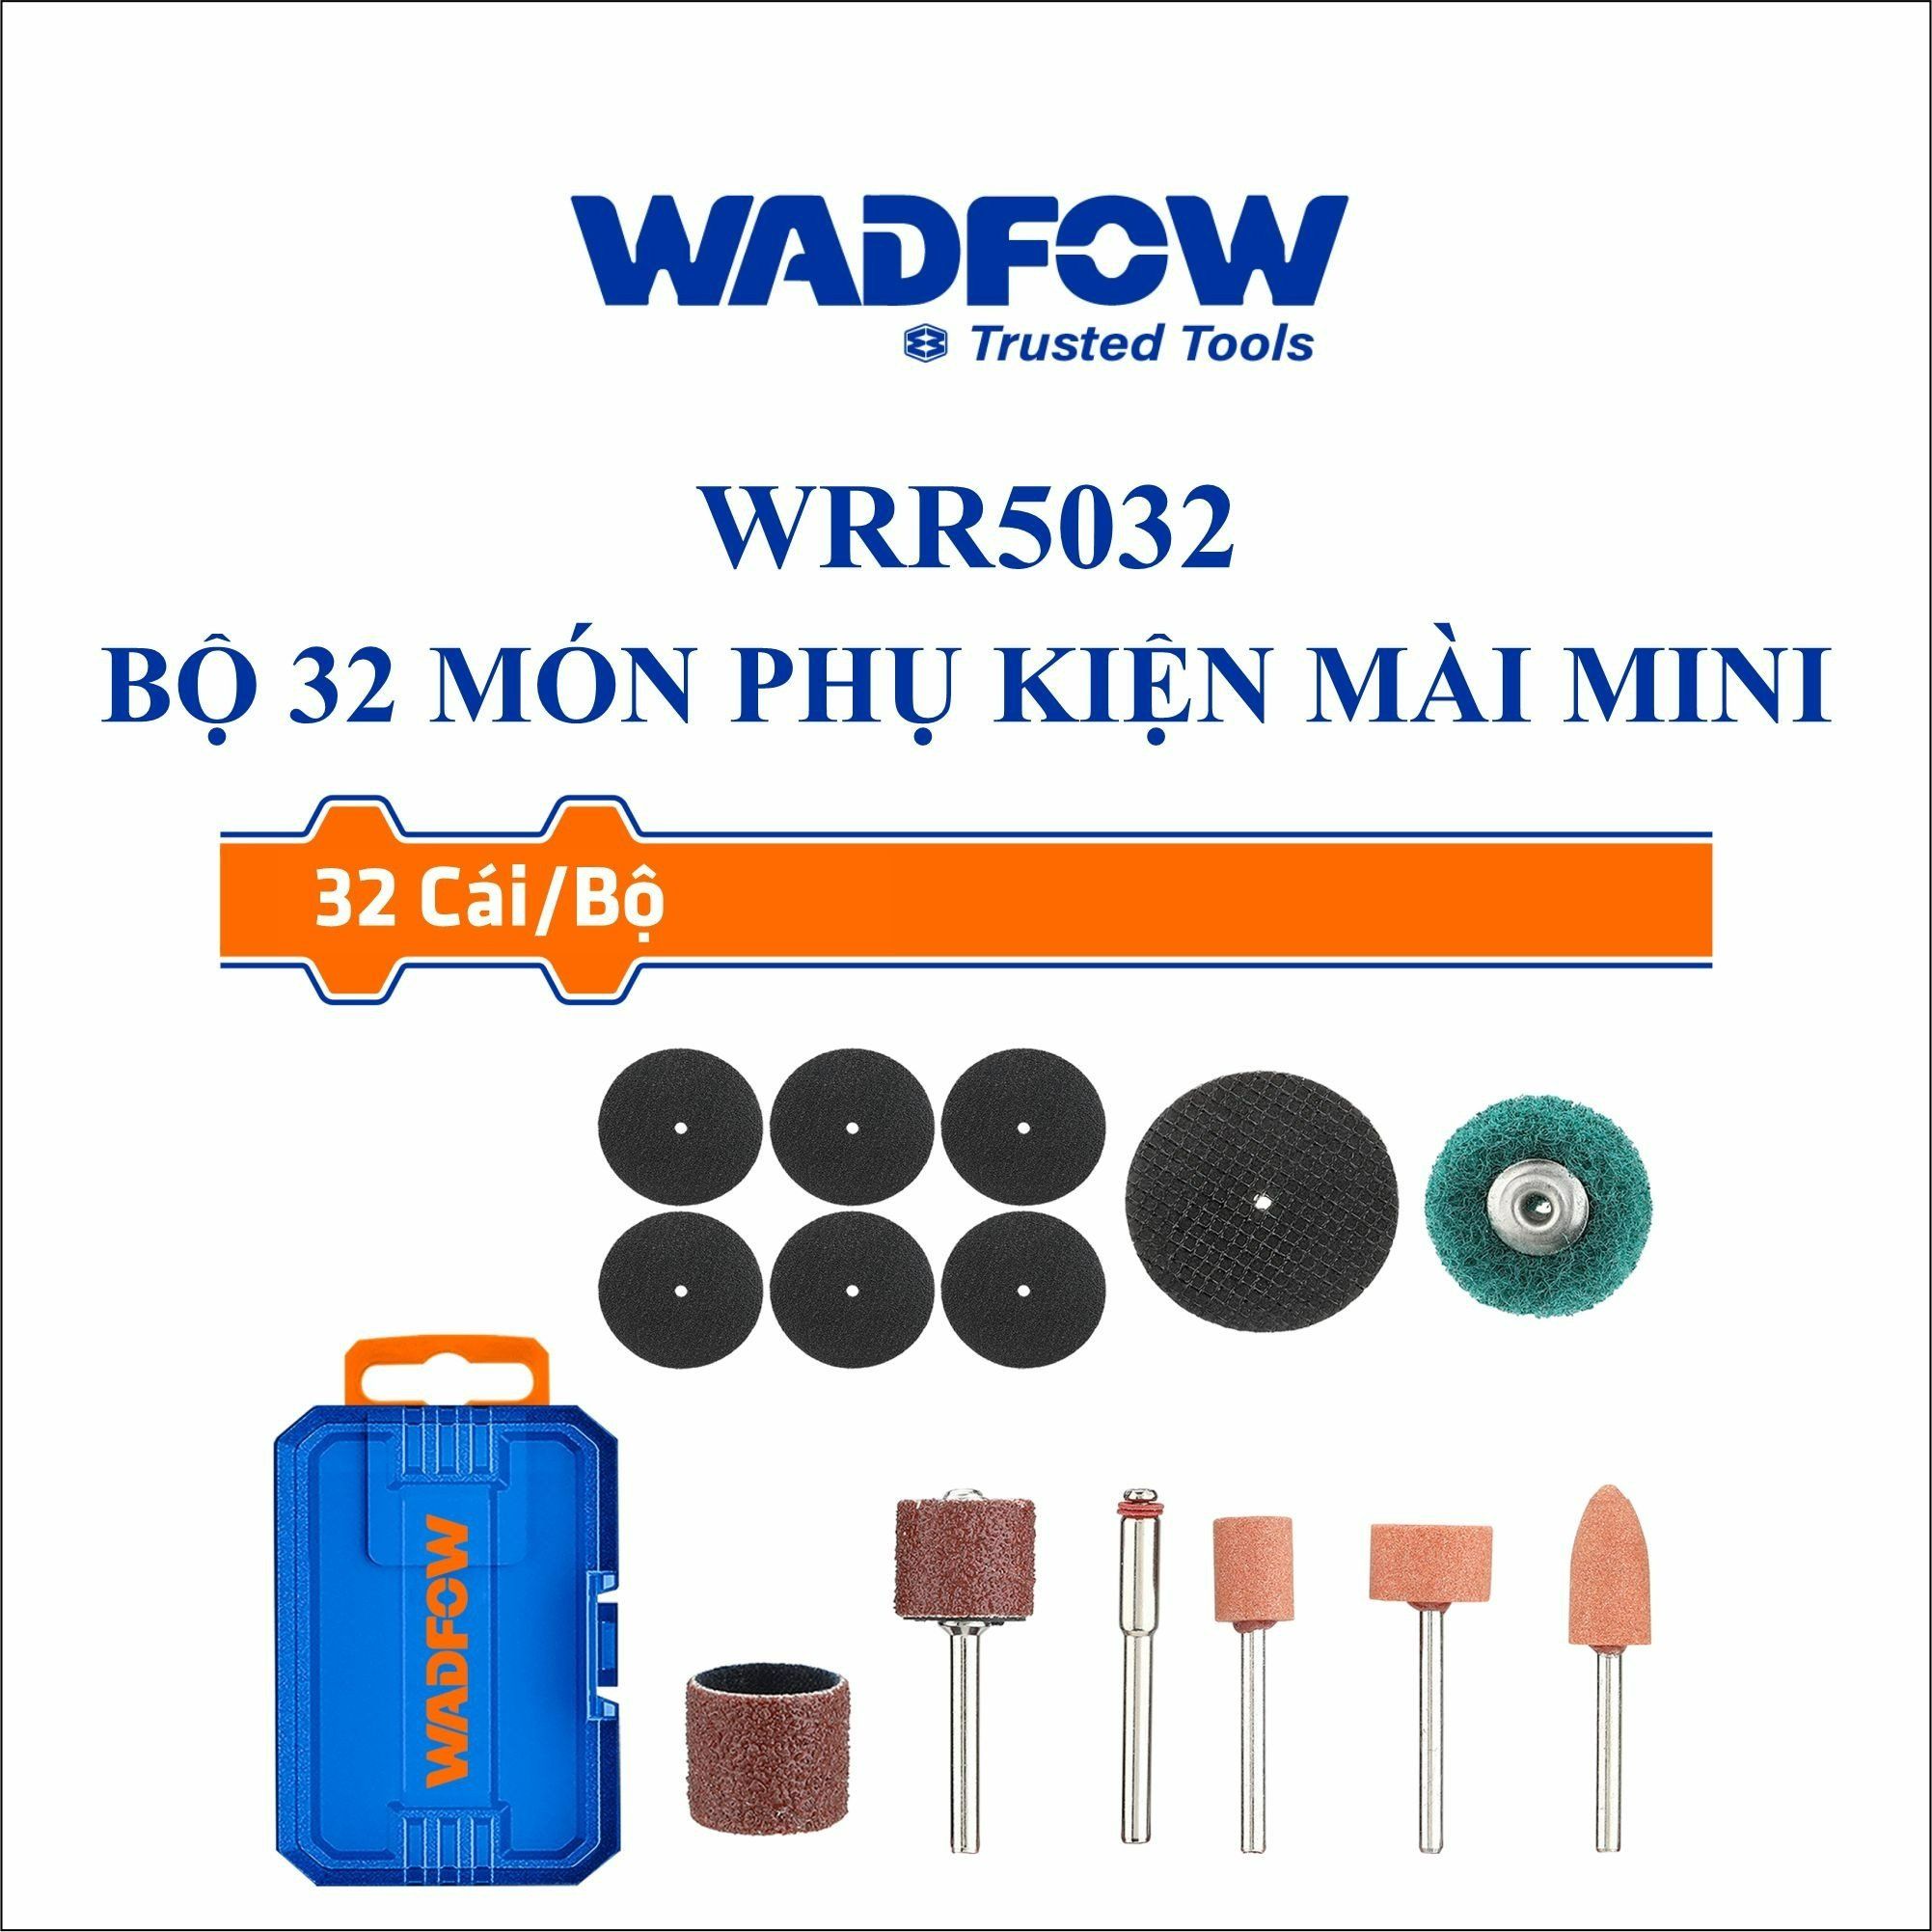  Bộ 32 món phụ kiện mài mini WADFOW WRR5032 